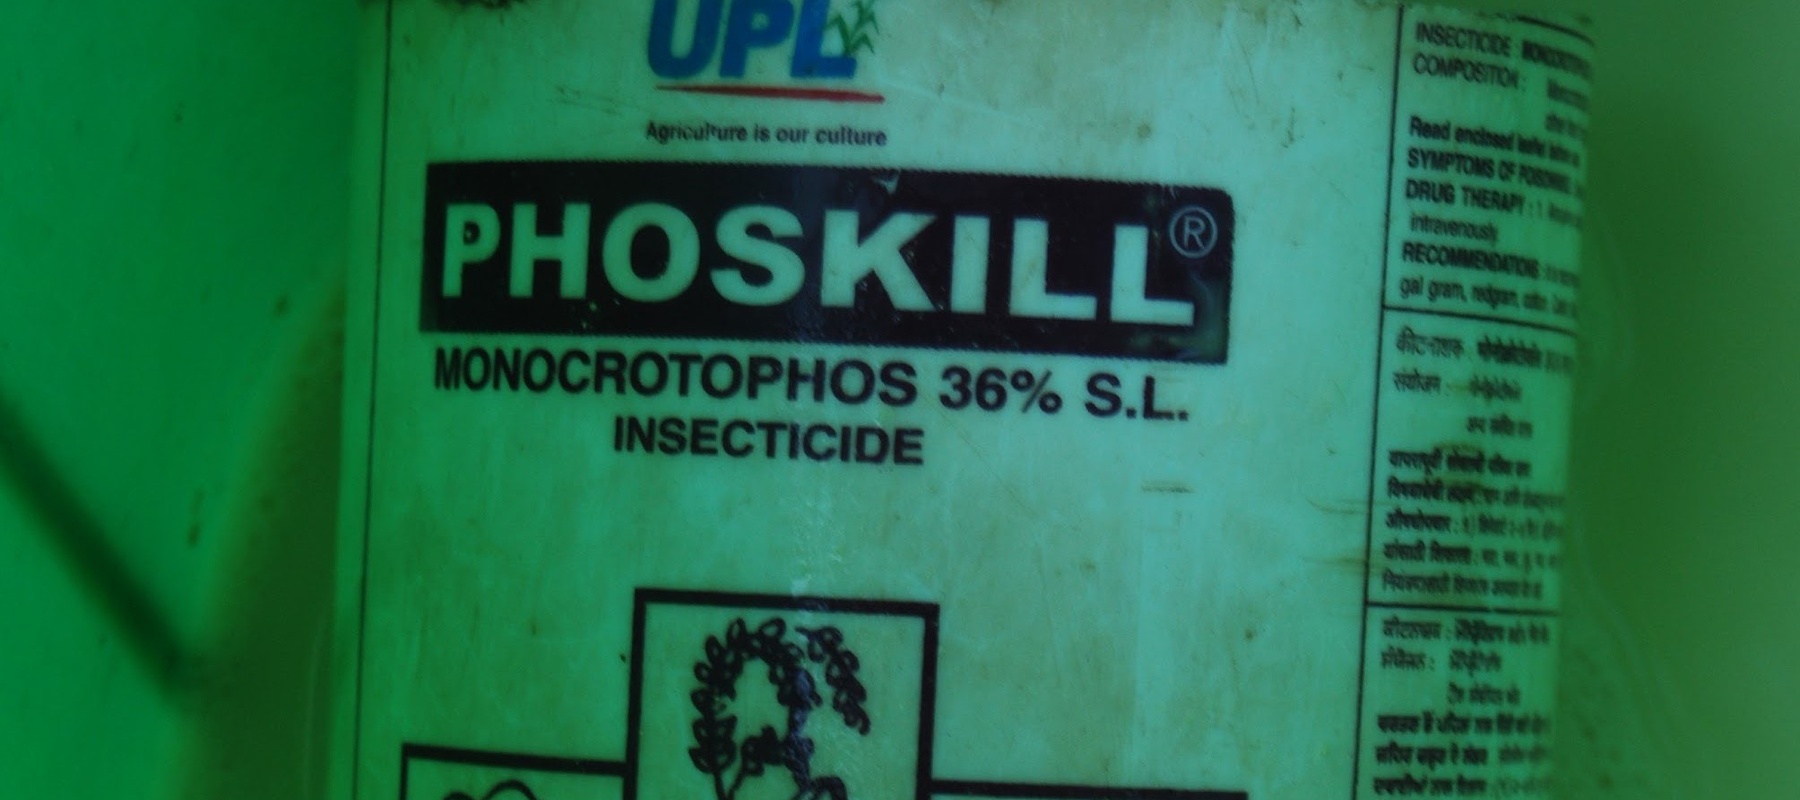 Phoskill